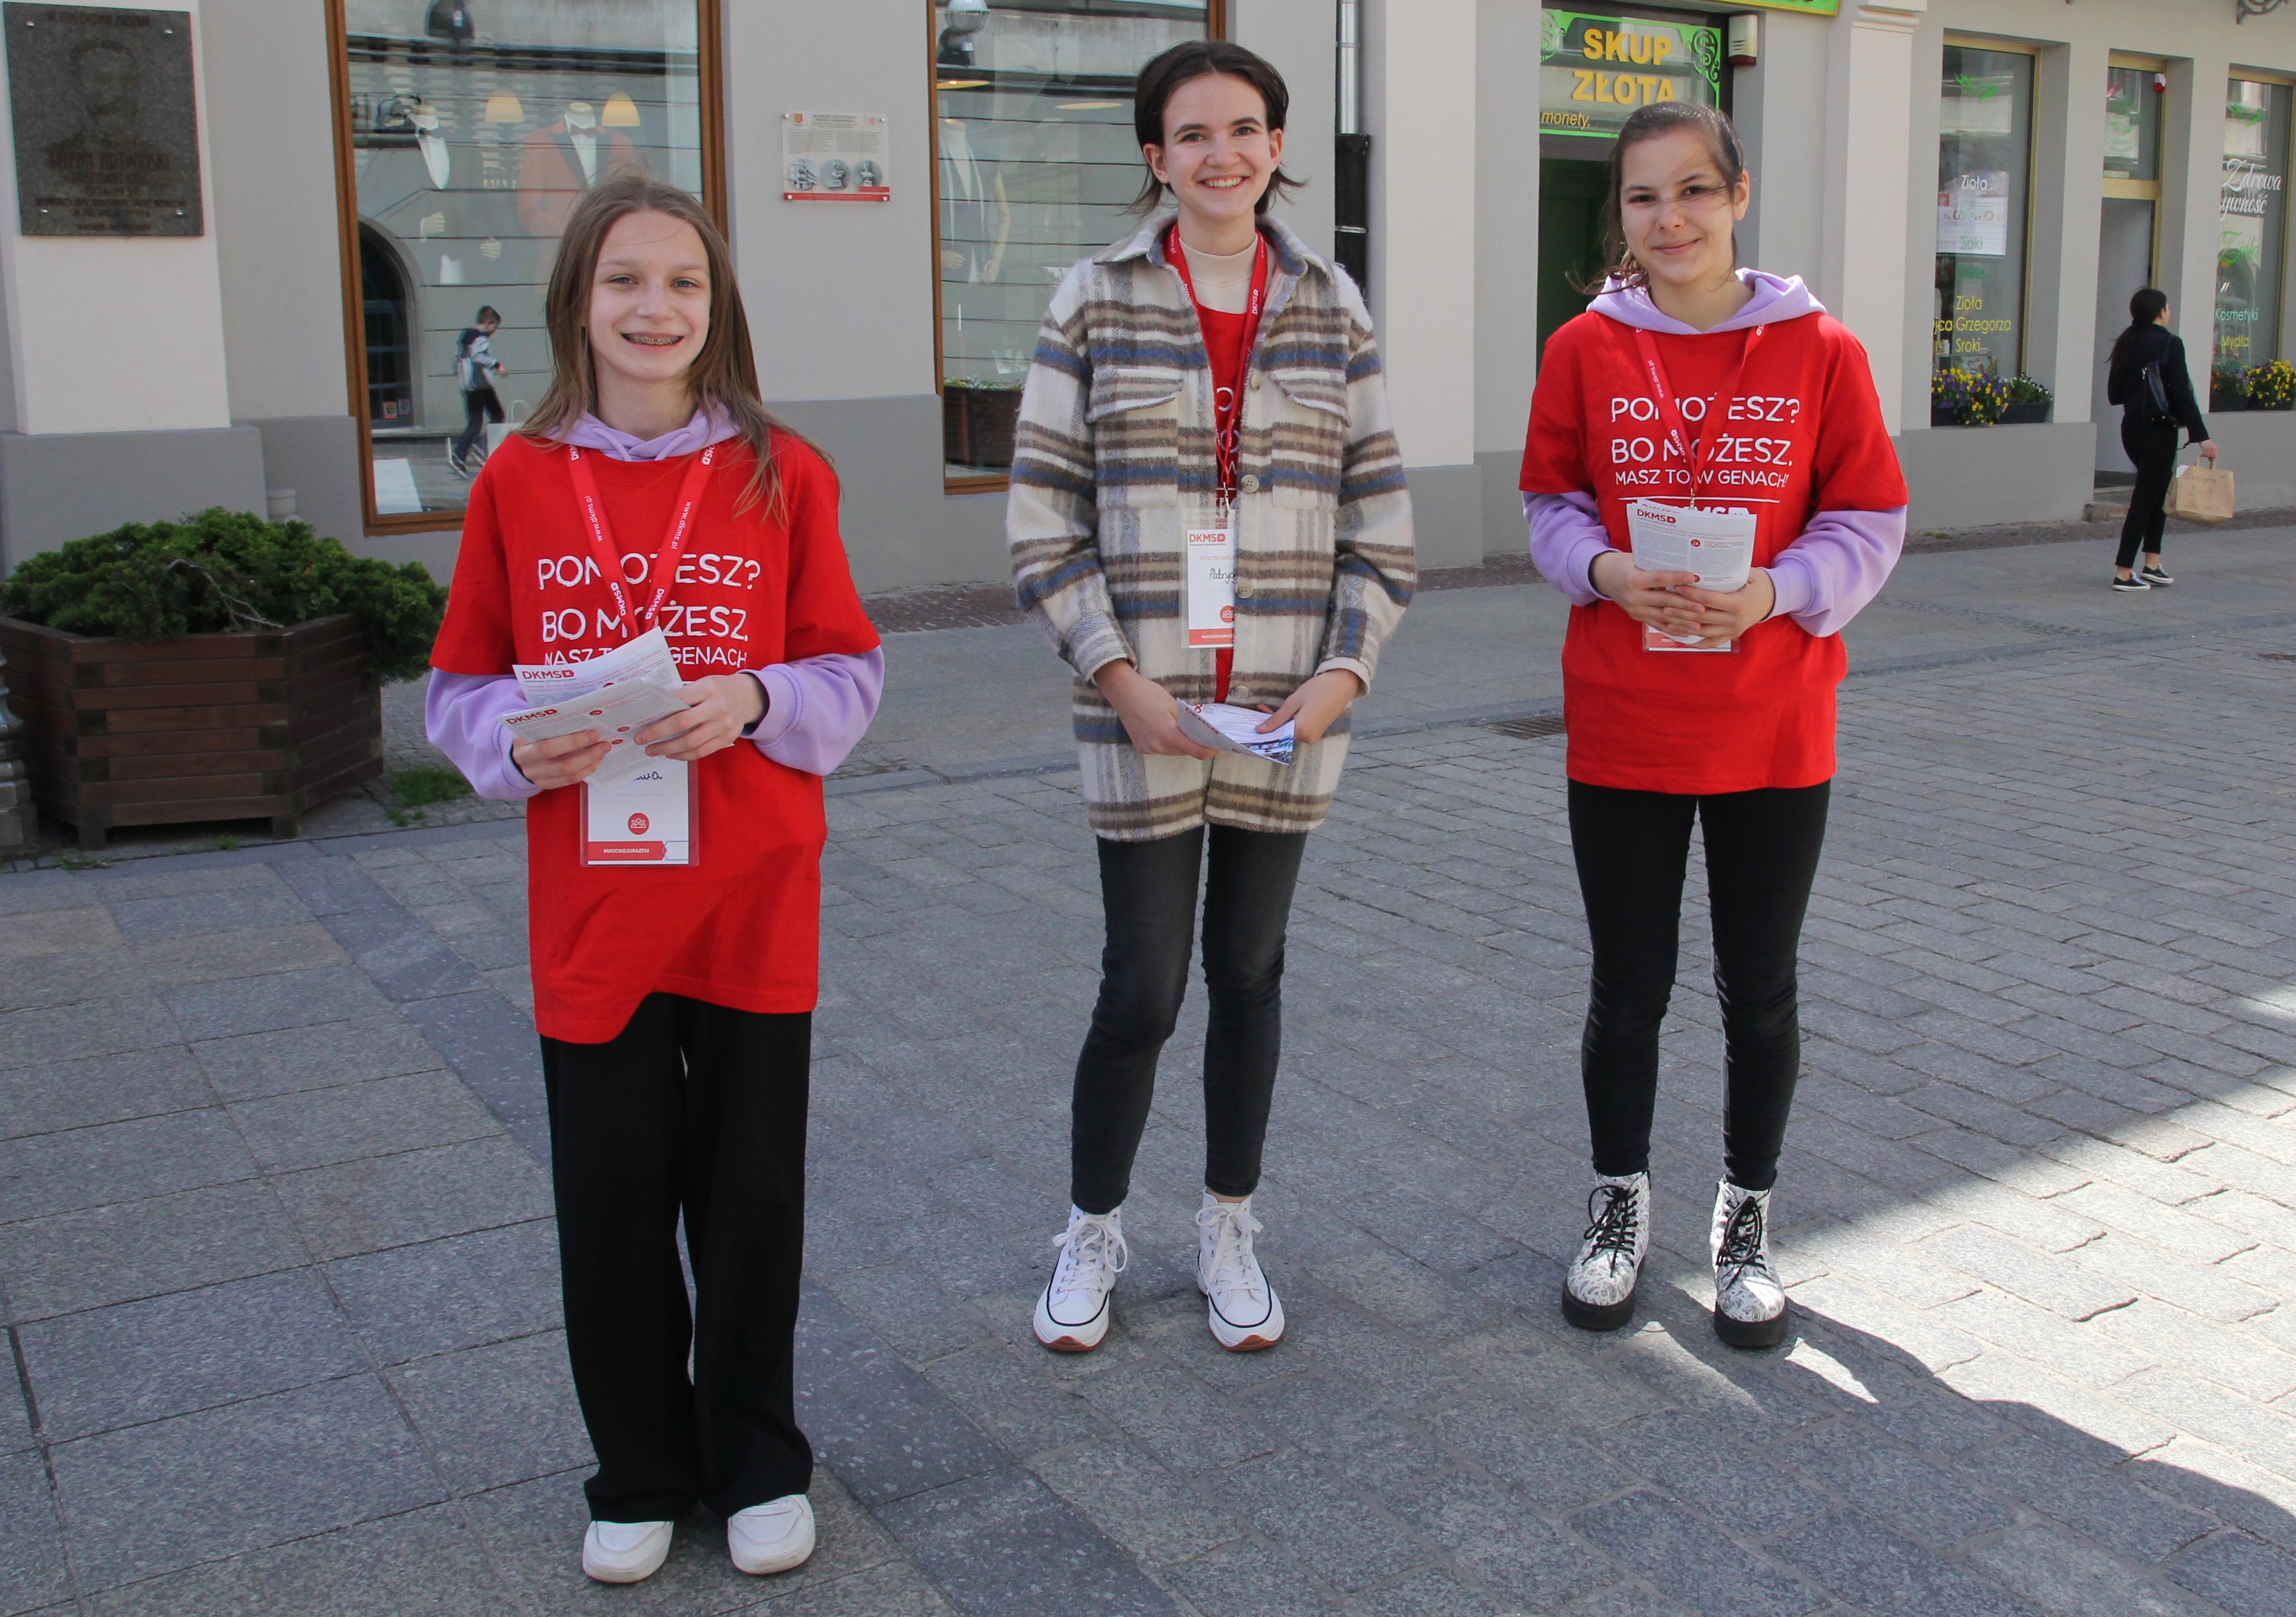 Trzy młode wolontariuszki Fundacji DKMS